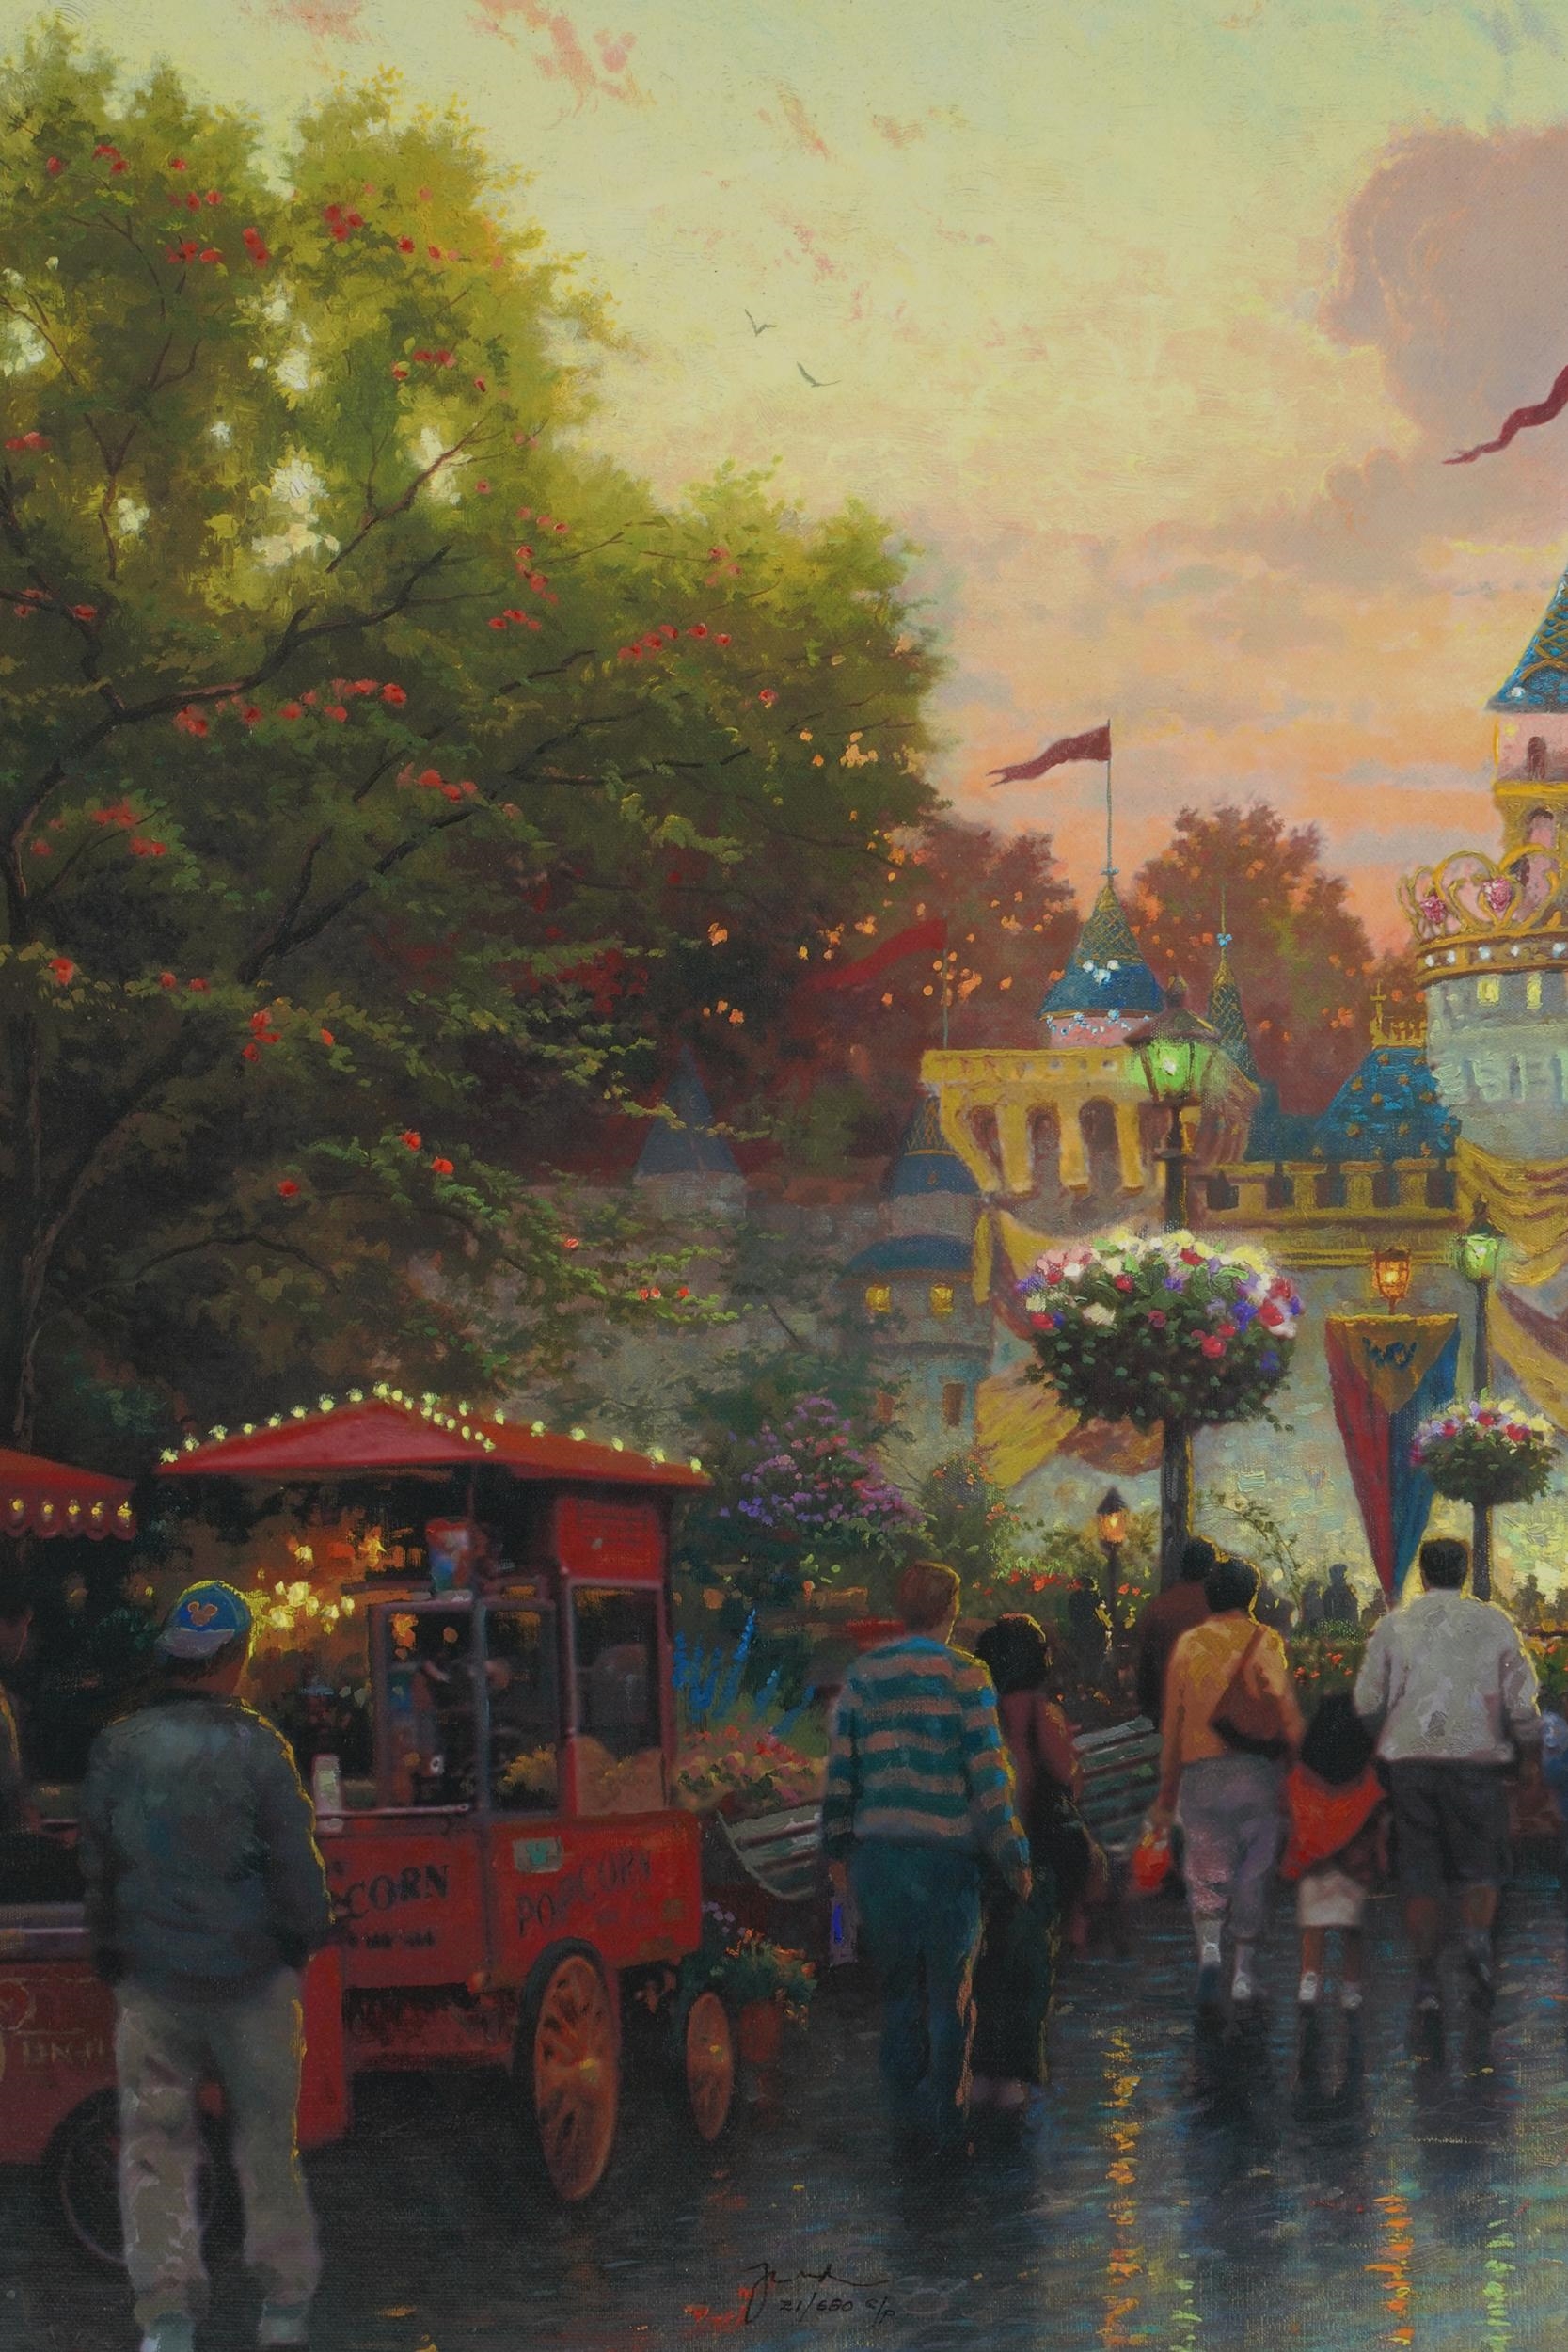 Thomas Kinkade Disney Paintings – Disney Art On Main Street